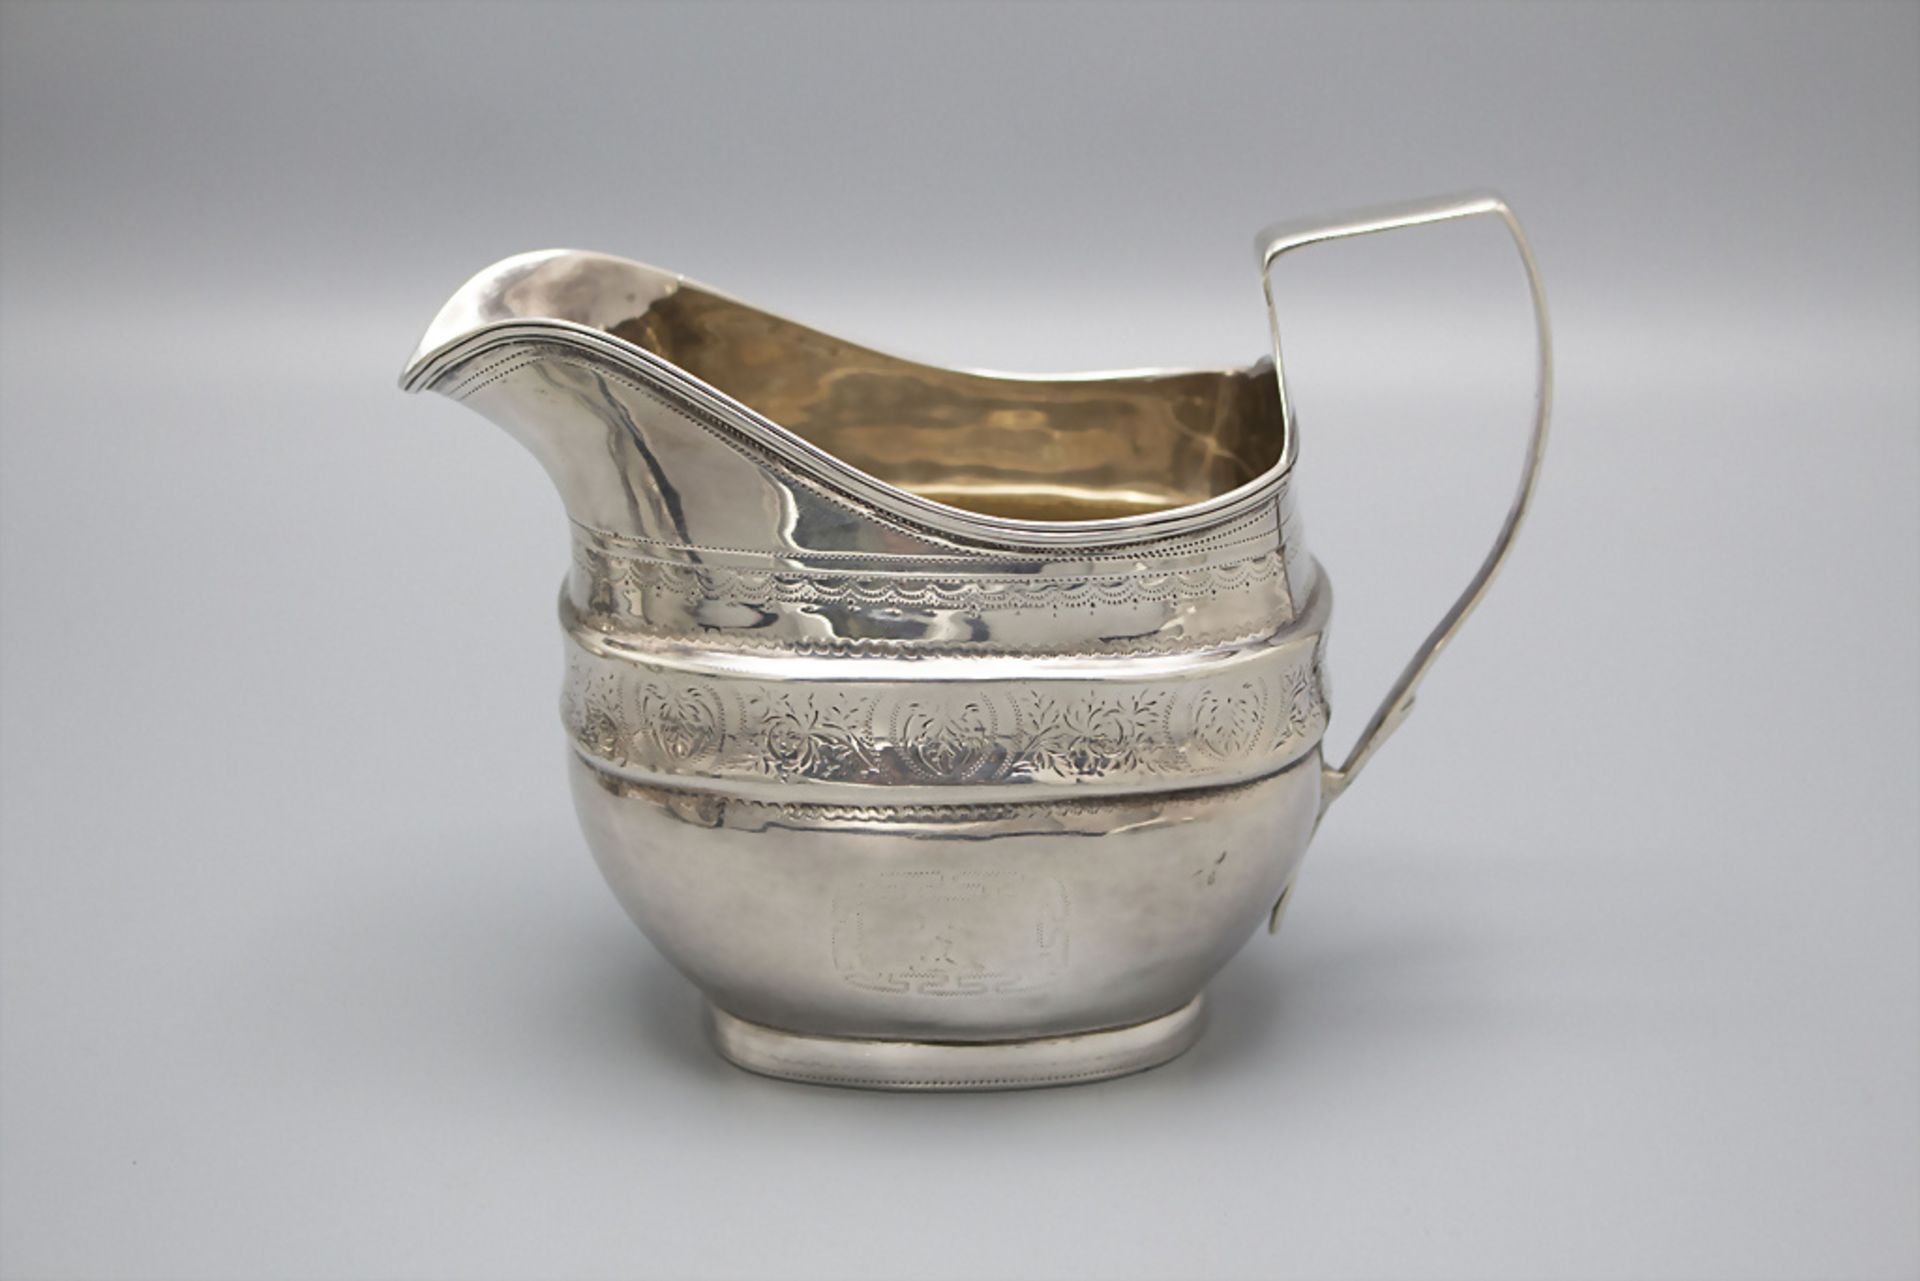 4 teiliges Teeset / A Sterling silver tea set, Duncan Urquhart & Naphtali Hart, London, 1807 - Image 8 of 15